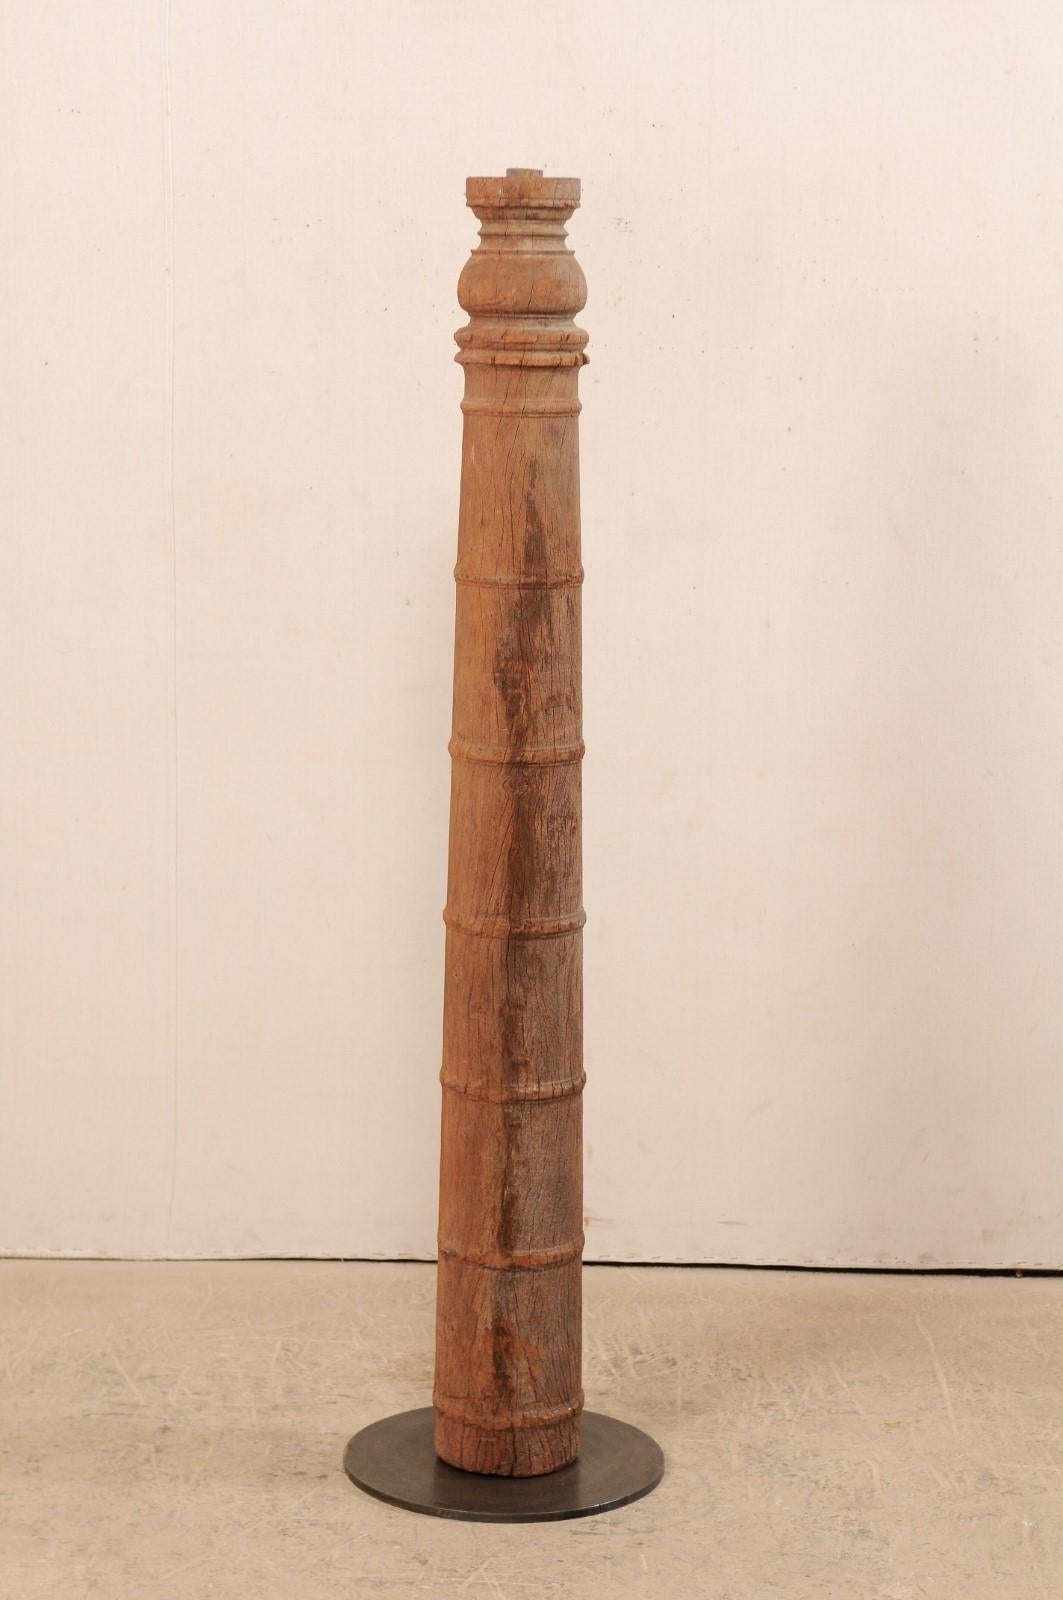 Une colonne unique en bois sculpté de style colonial britannique du 19e siècle avec un support personnalisé. Cet ancien élément architectural en bois sculpté à la main en provenance d'Inde, d'une hauteur d'environ 1,5 mètre, présente une colonne